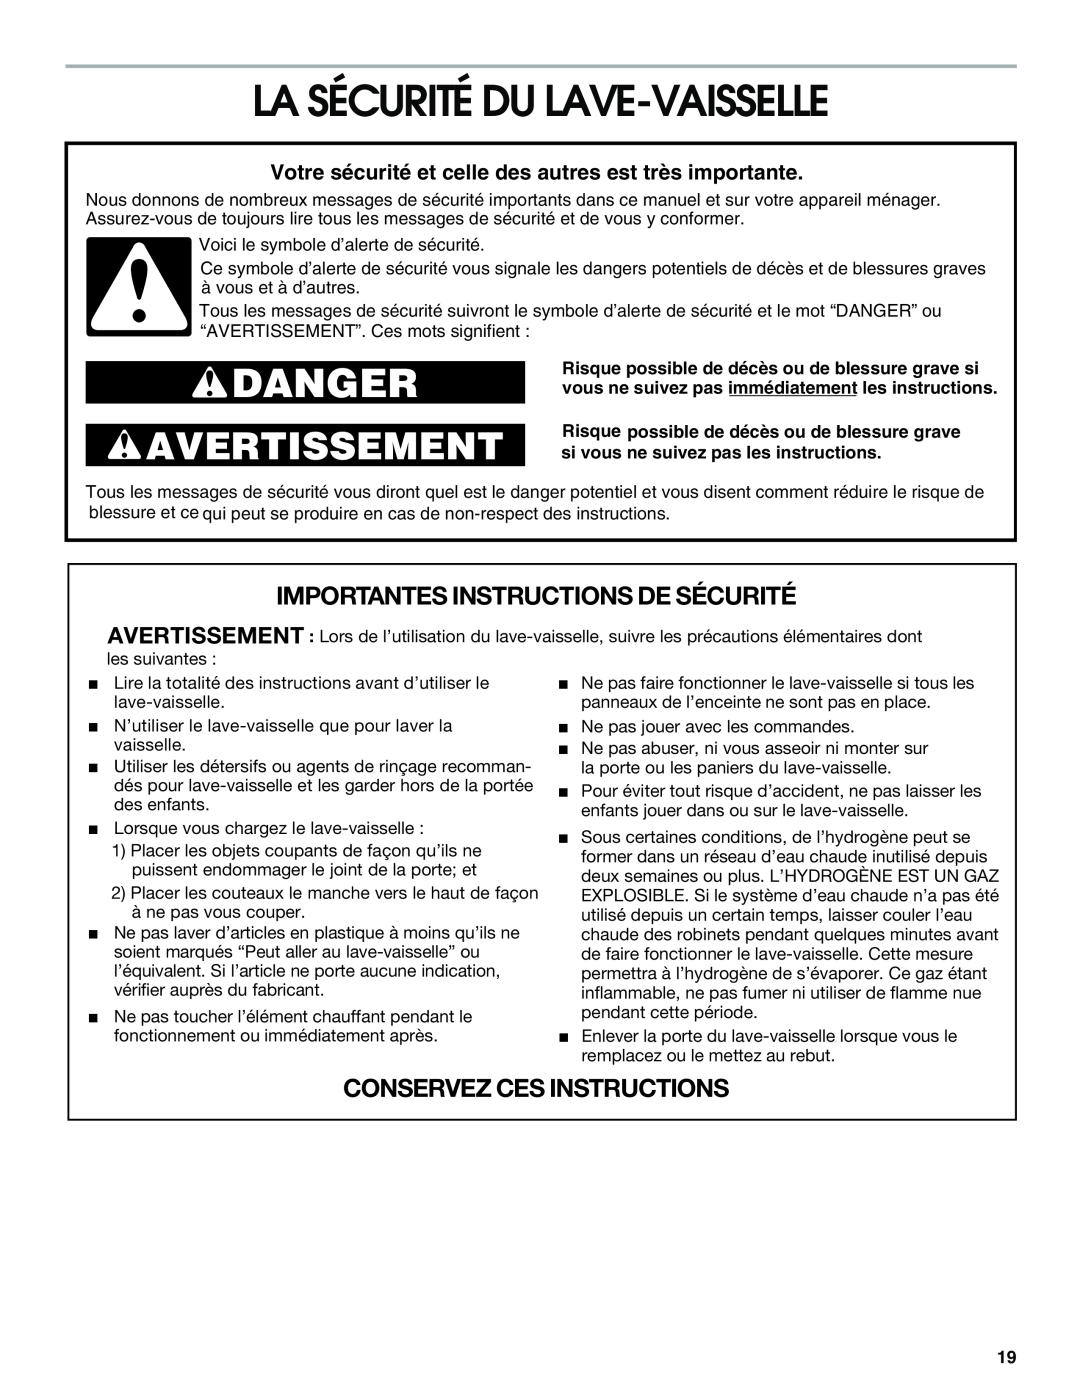 Whirlpool UNDERCOUNTER La Sécurité Du Lave-Vaisselle, Importantes Instructions De Sécurité, Conservez Ces Instructions 